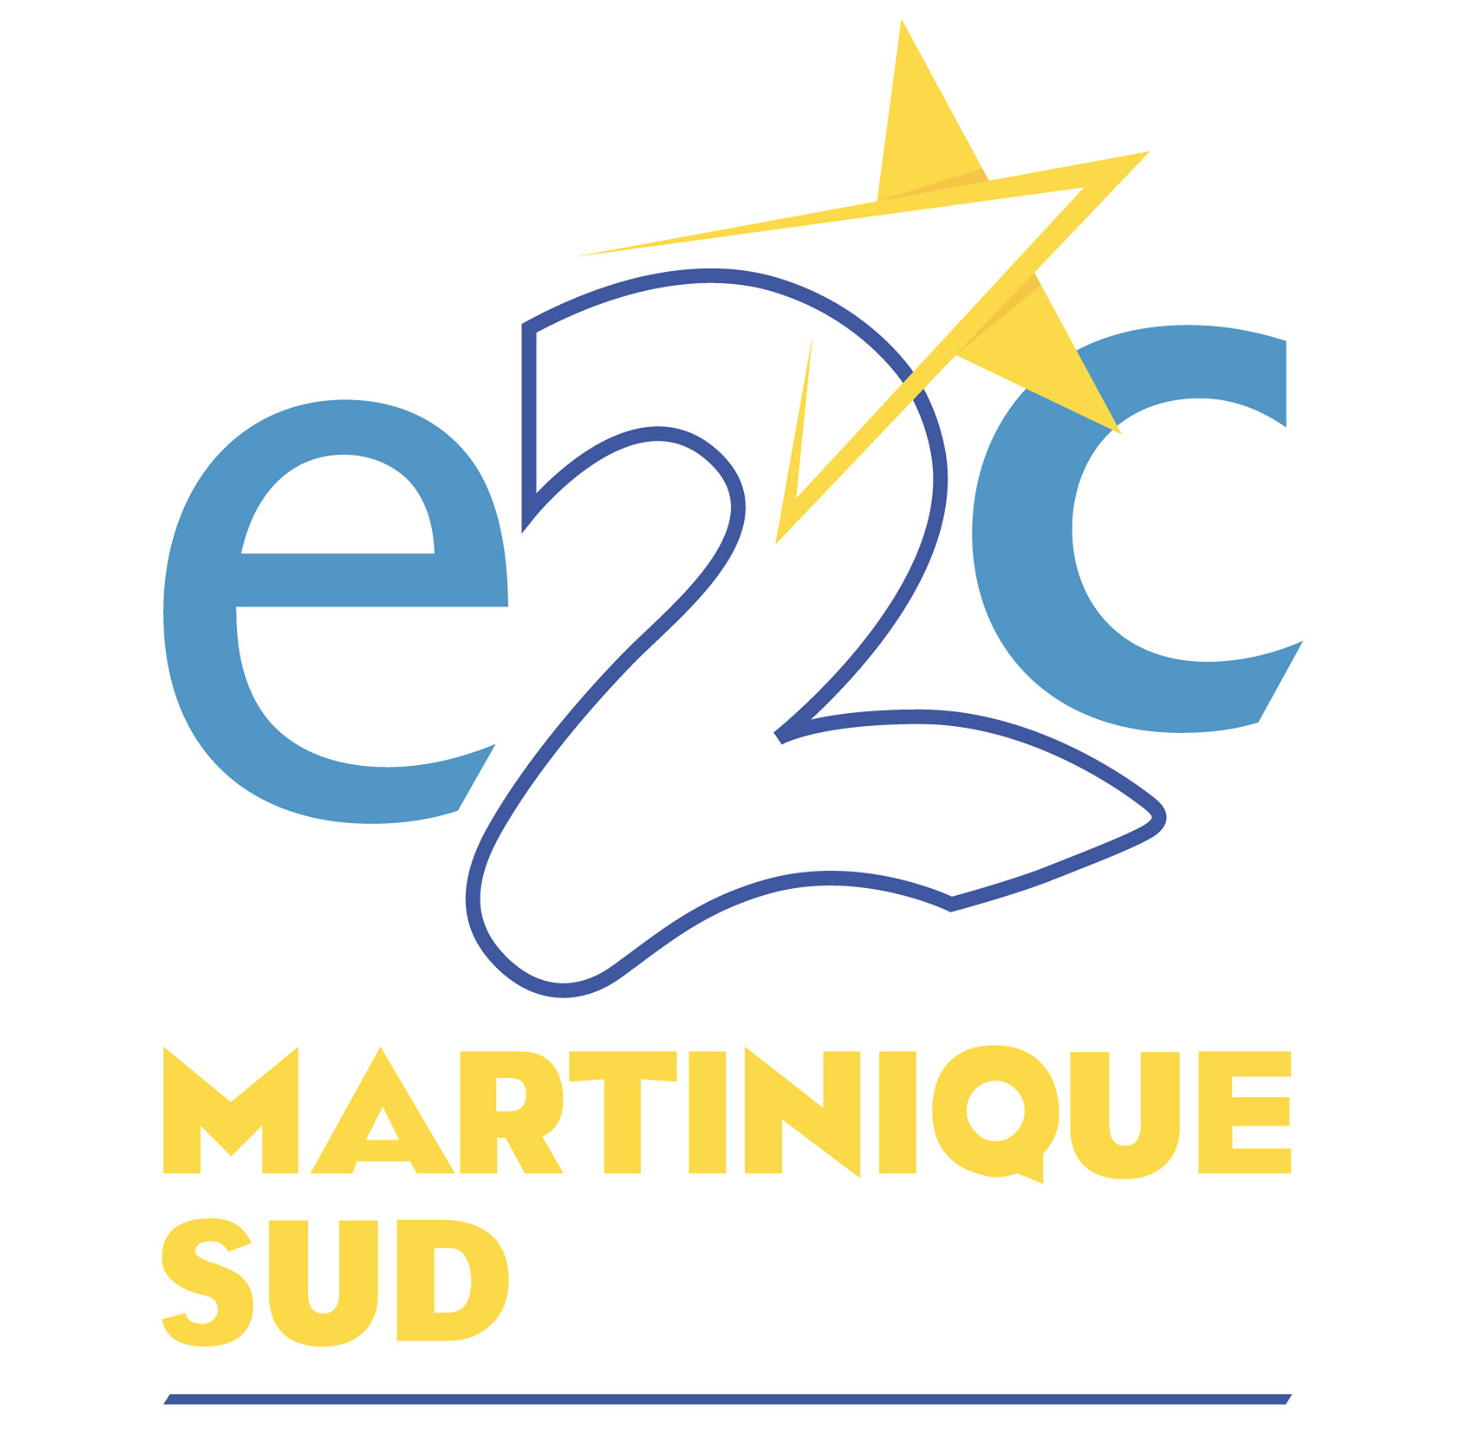 E2C Martinique Sud